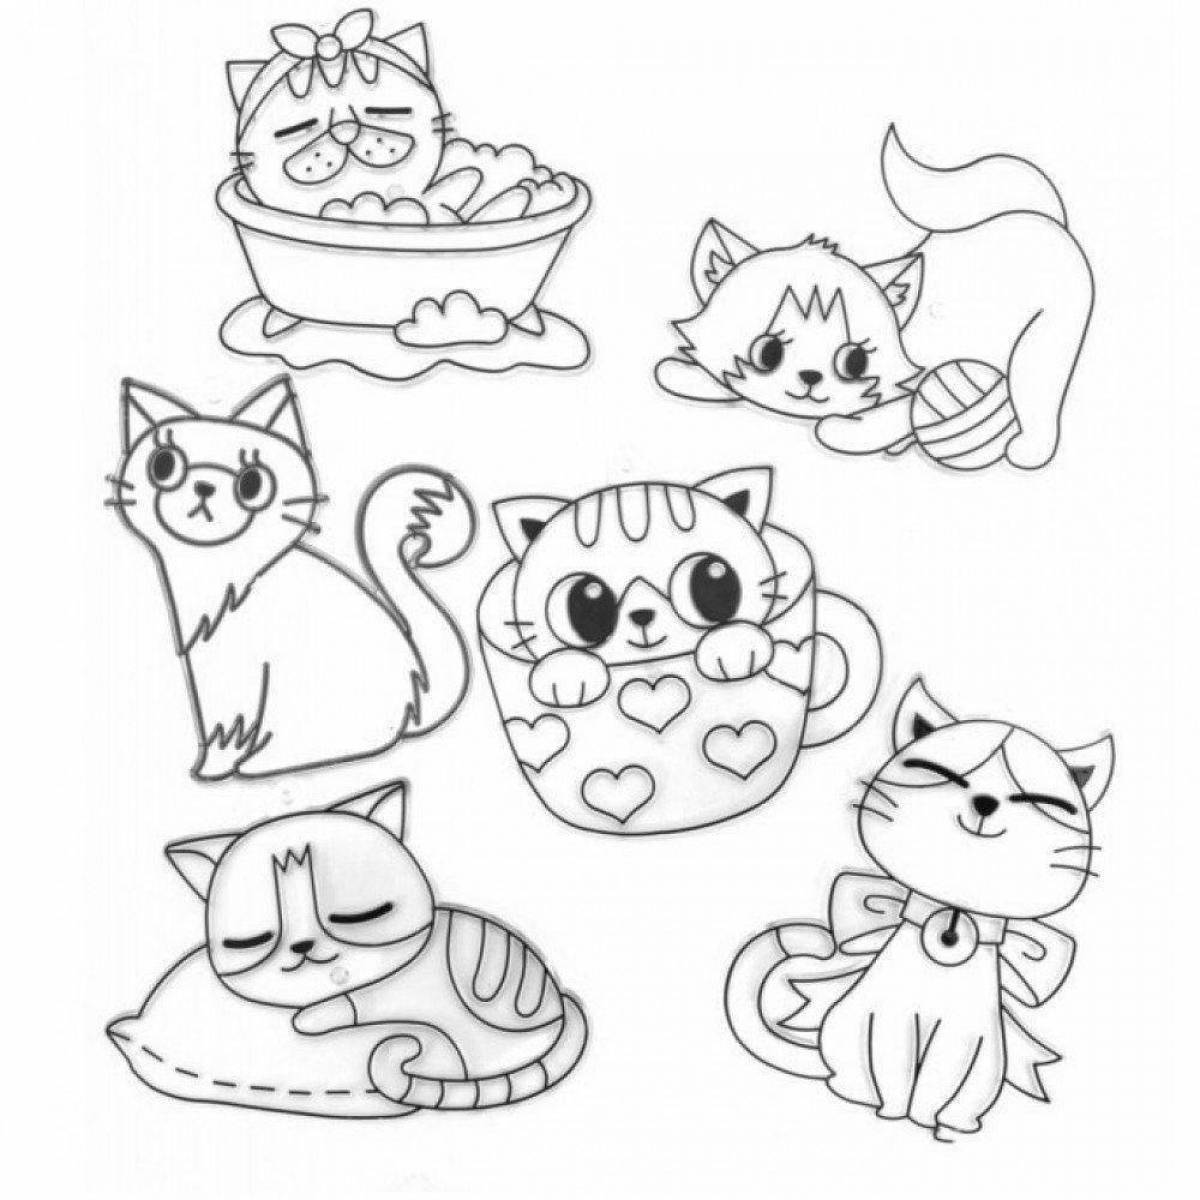 Little cats #4